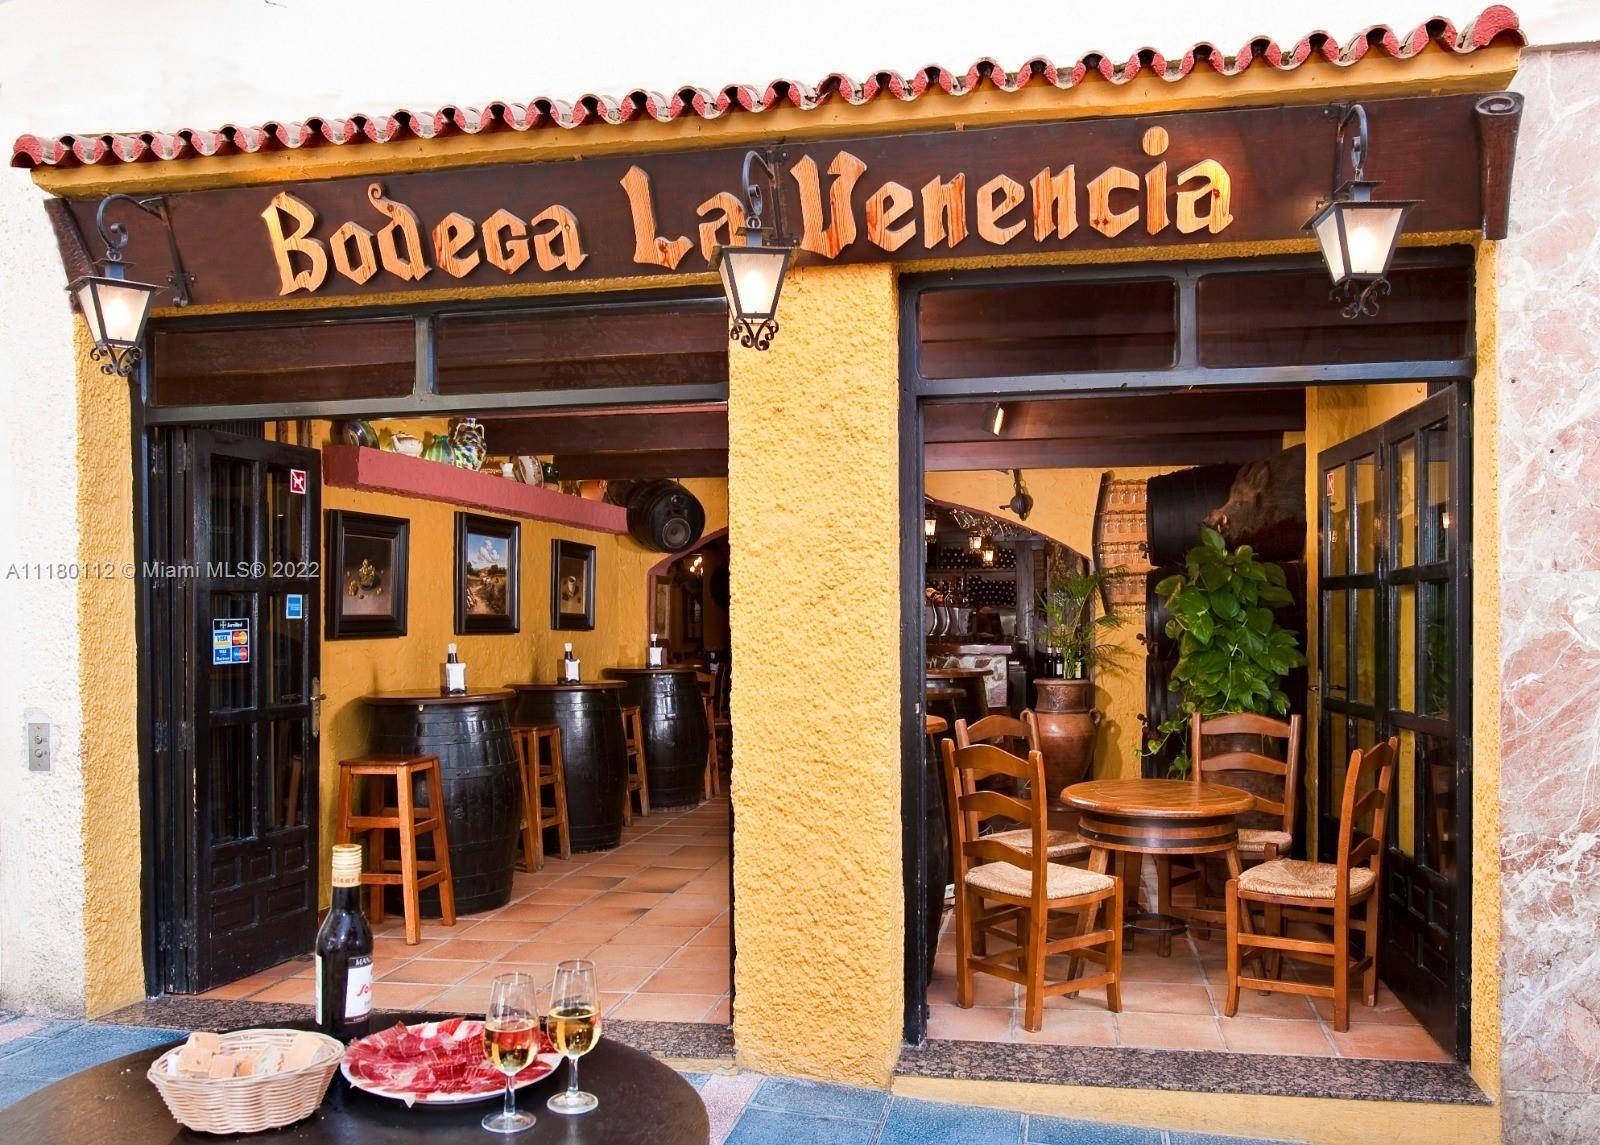 Restaurant La Venencian in Marbella, Malaga, Spain.